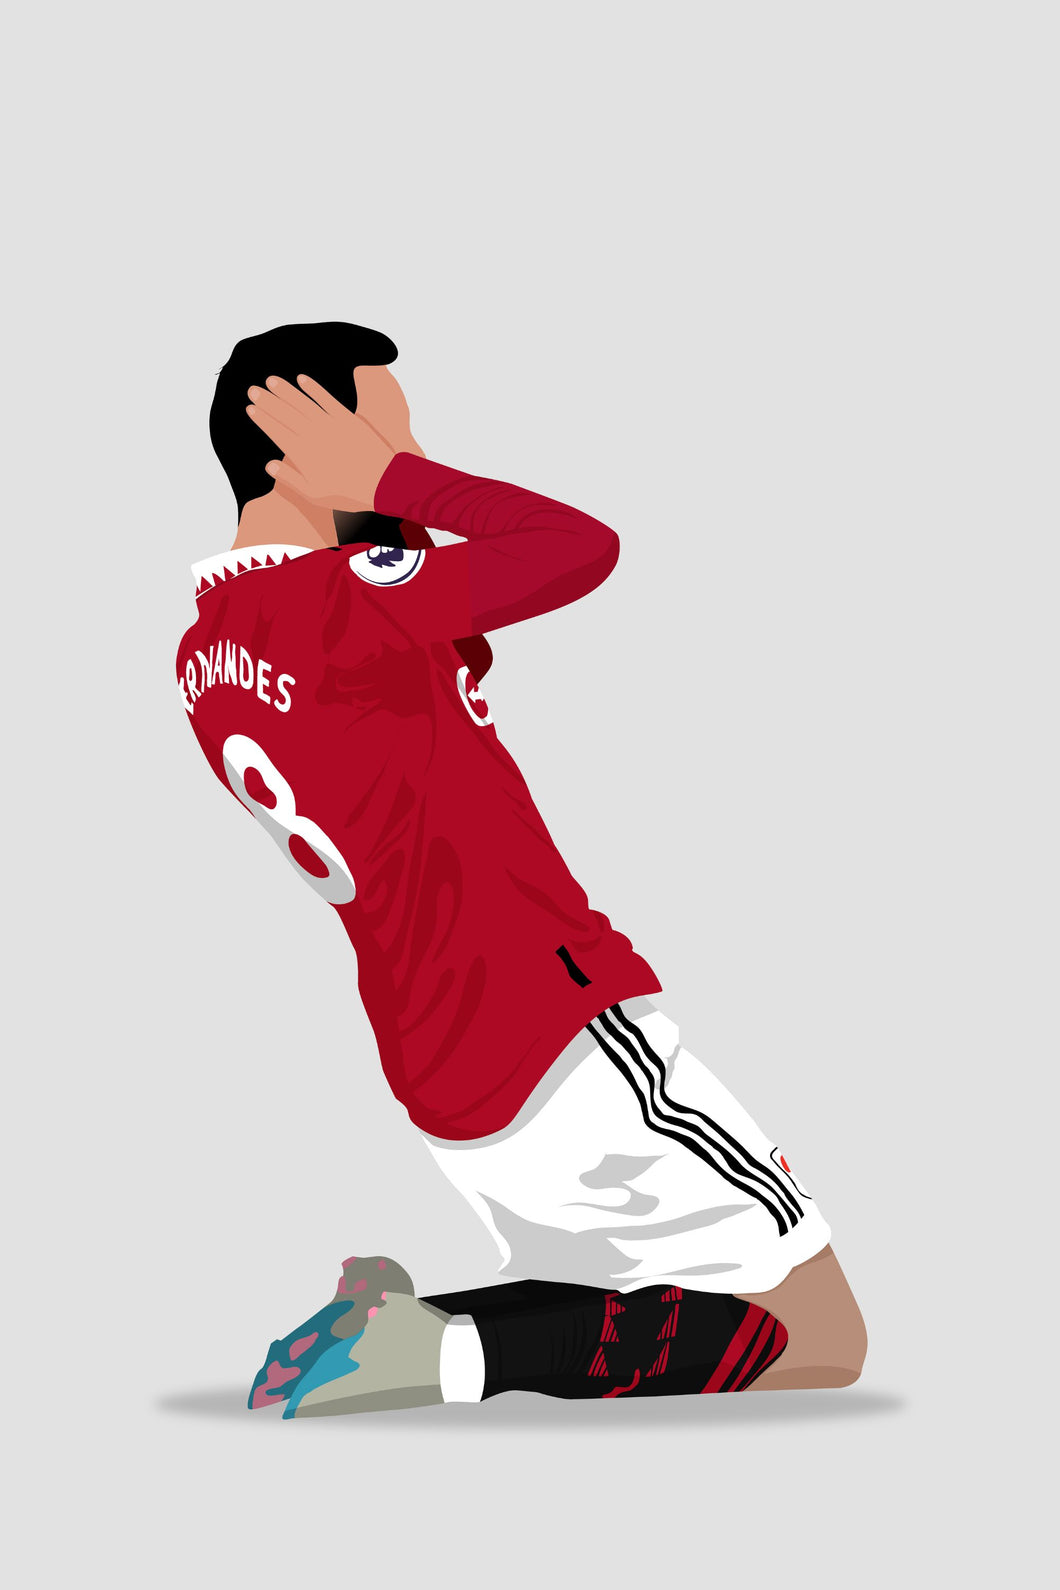 Bruno Fernandes 01 - Manchester United